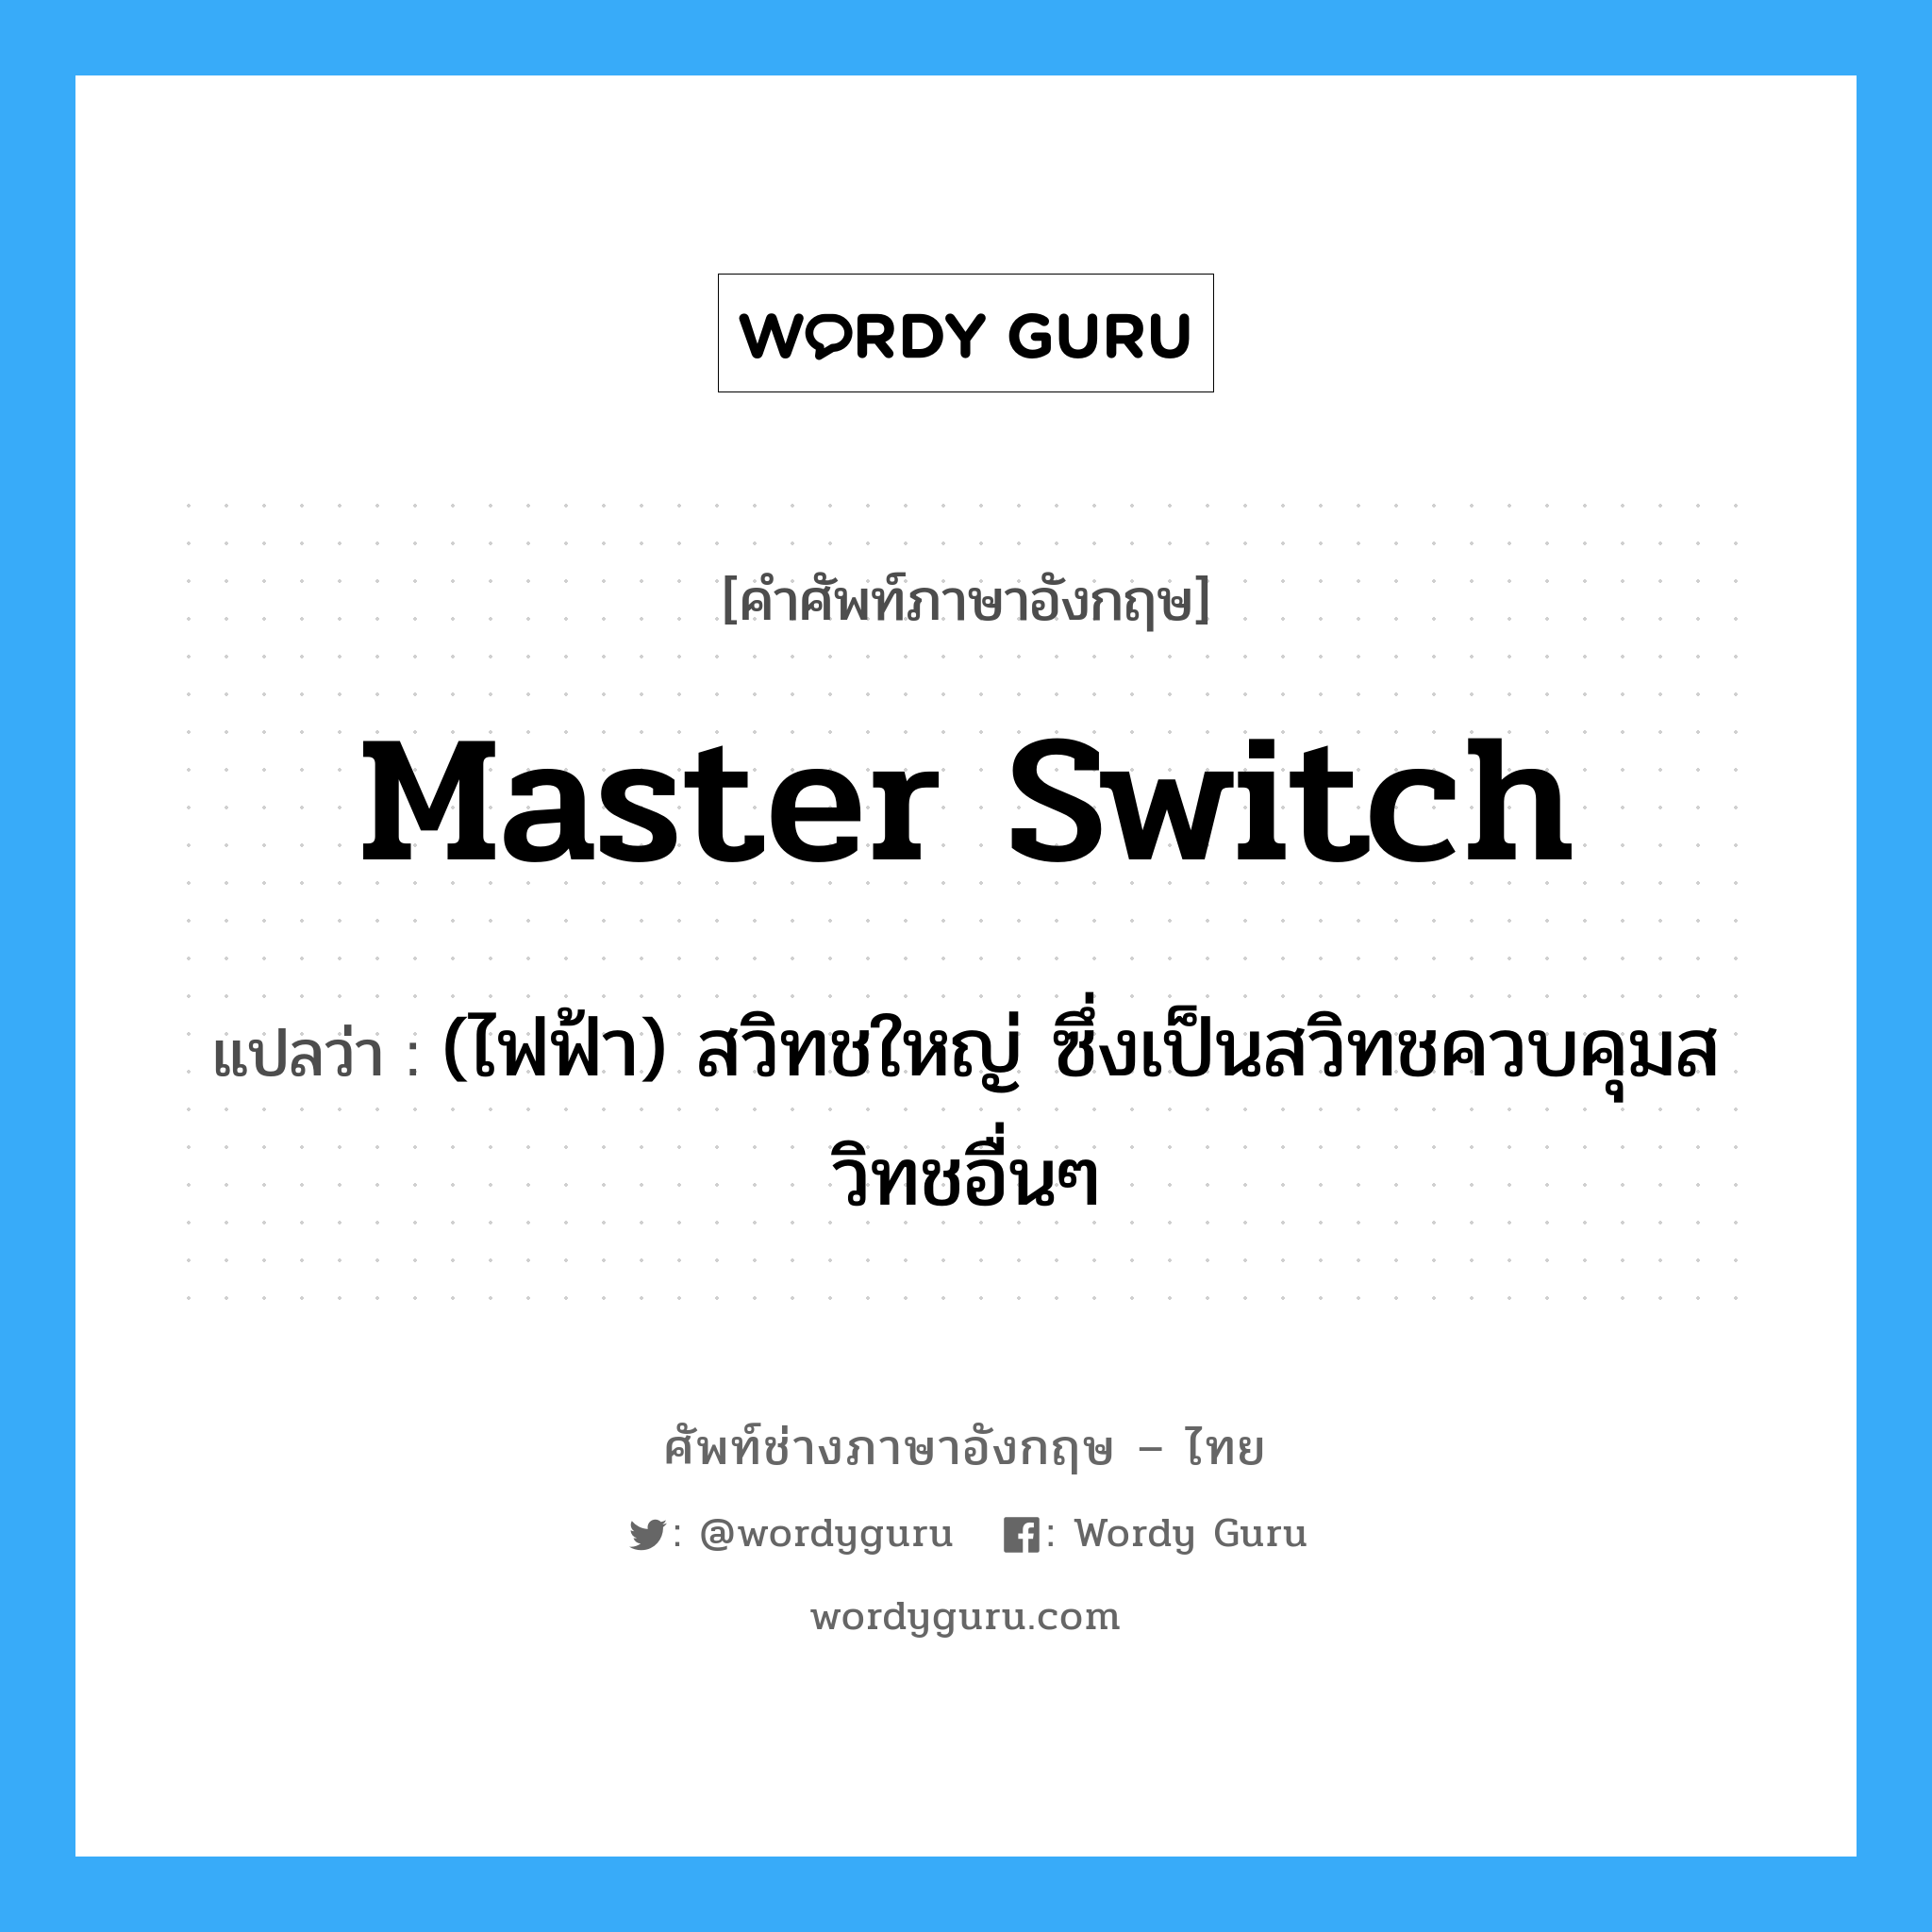 master switch แปลว่า?, คำศัพท์ช่างภาษาอังกฤษ - ไทย master switch คำศัพท์ภาษาอังกฤษ master switch แปลว่า (ไฟฟ้า) สวิทชใหญ่ ซึ่งเป็นสวิทชควบคุมสวิทชอื่นๆ